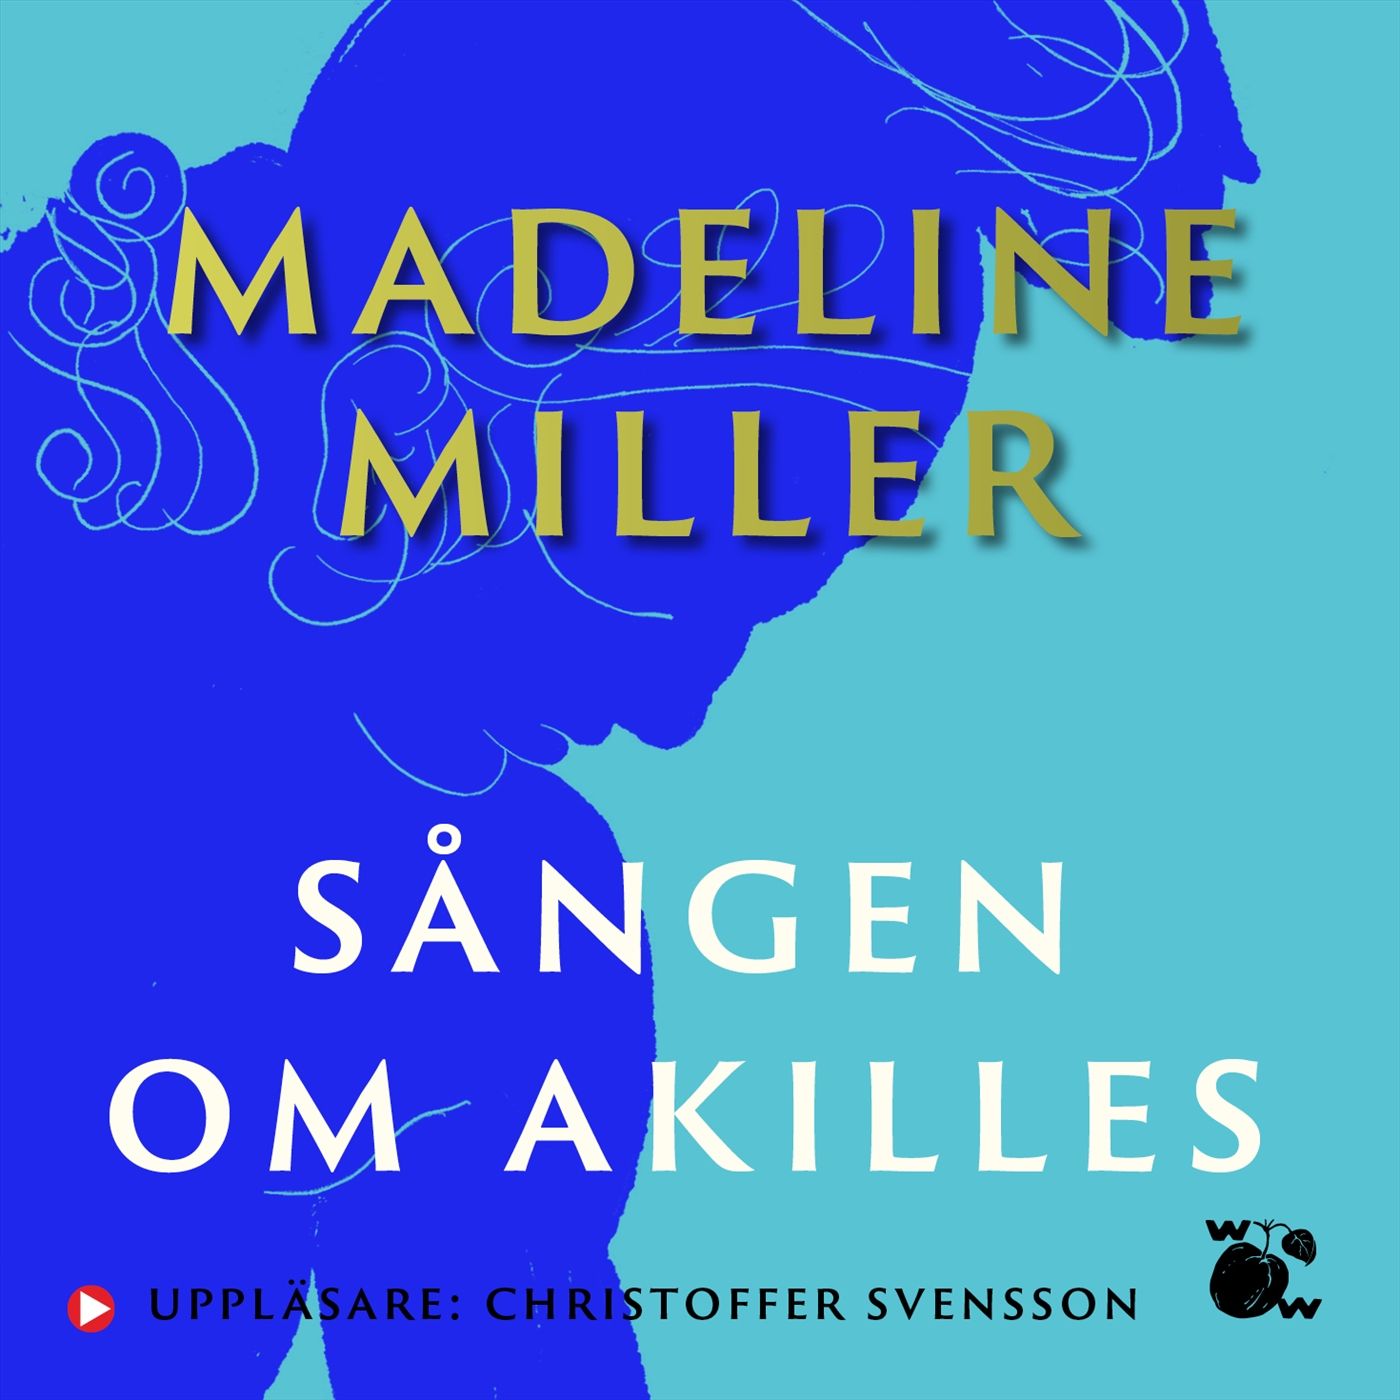 Sången om Akilles, ljudbok av Madeline Miller